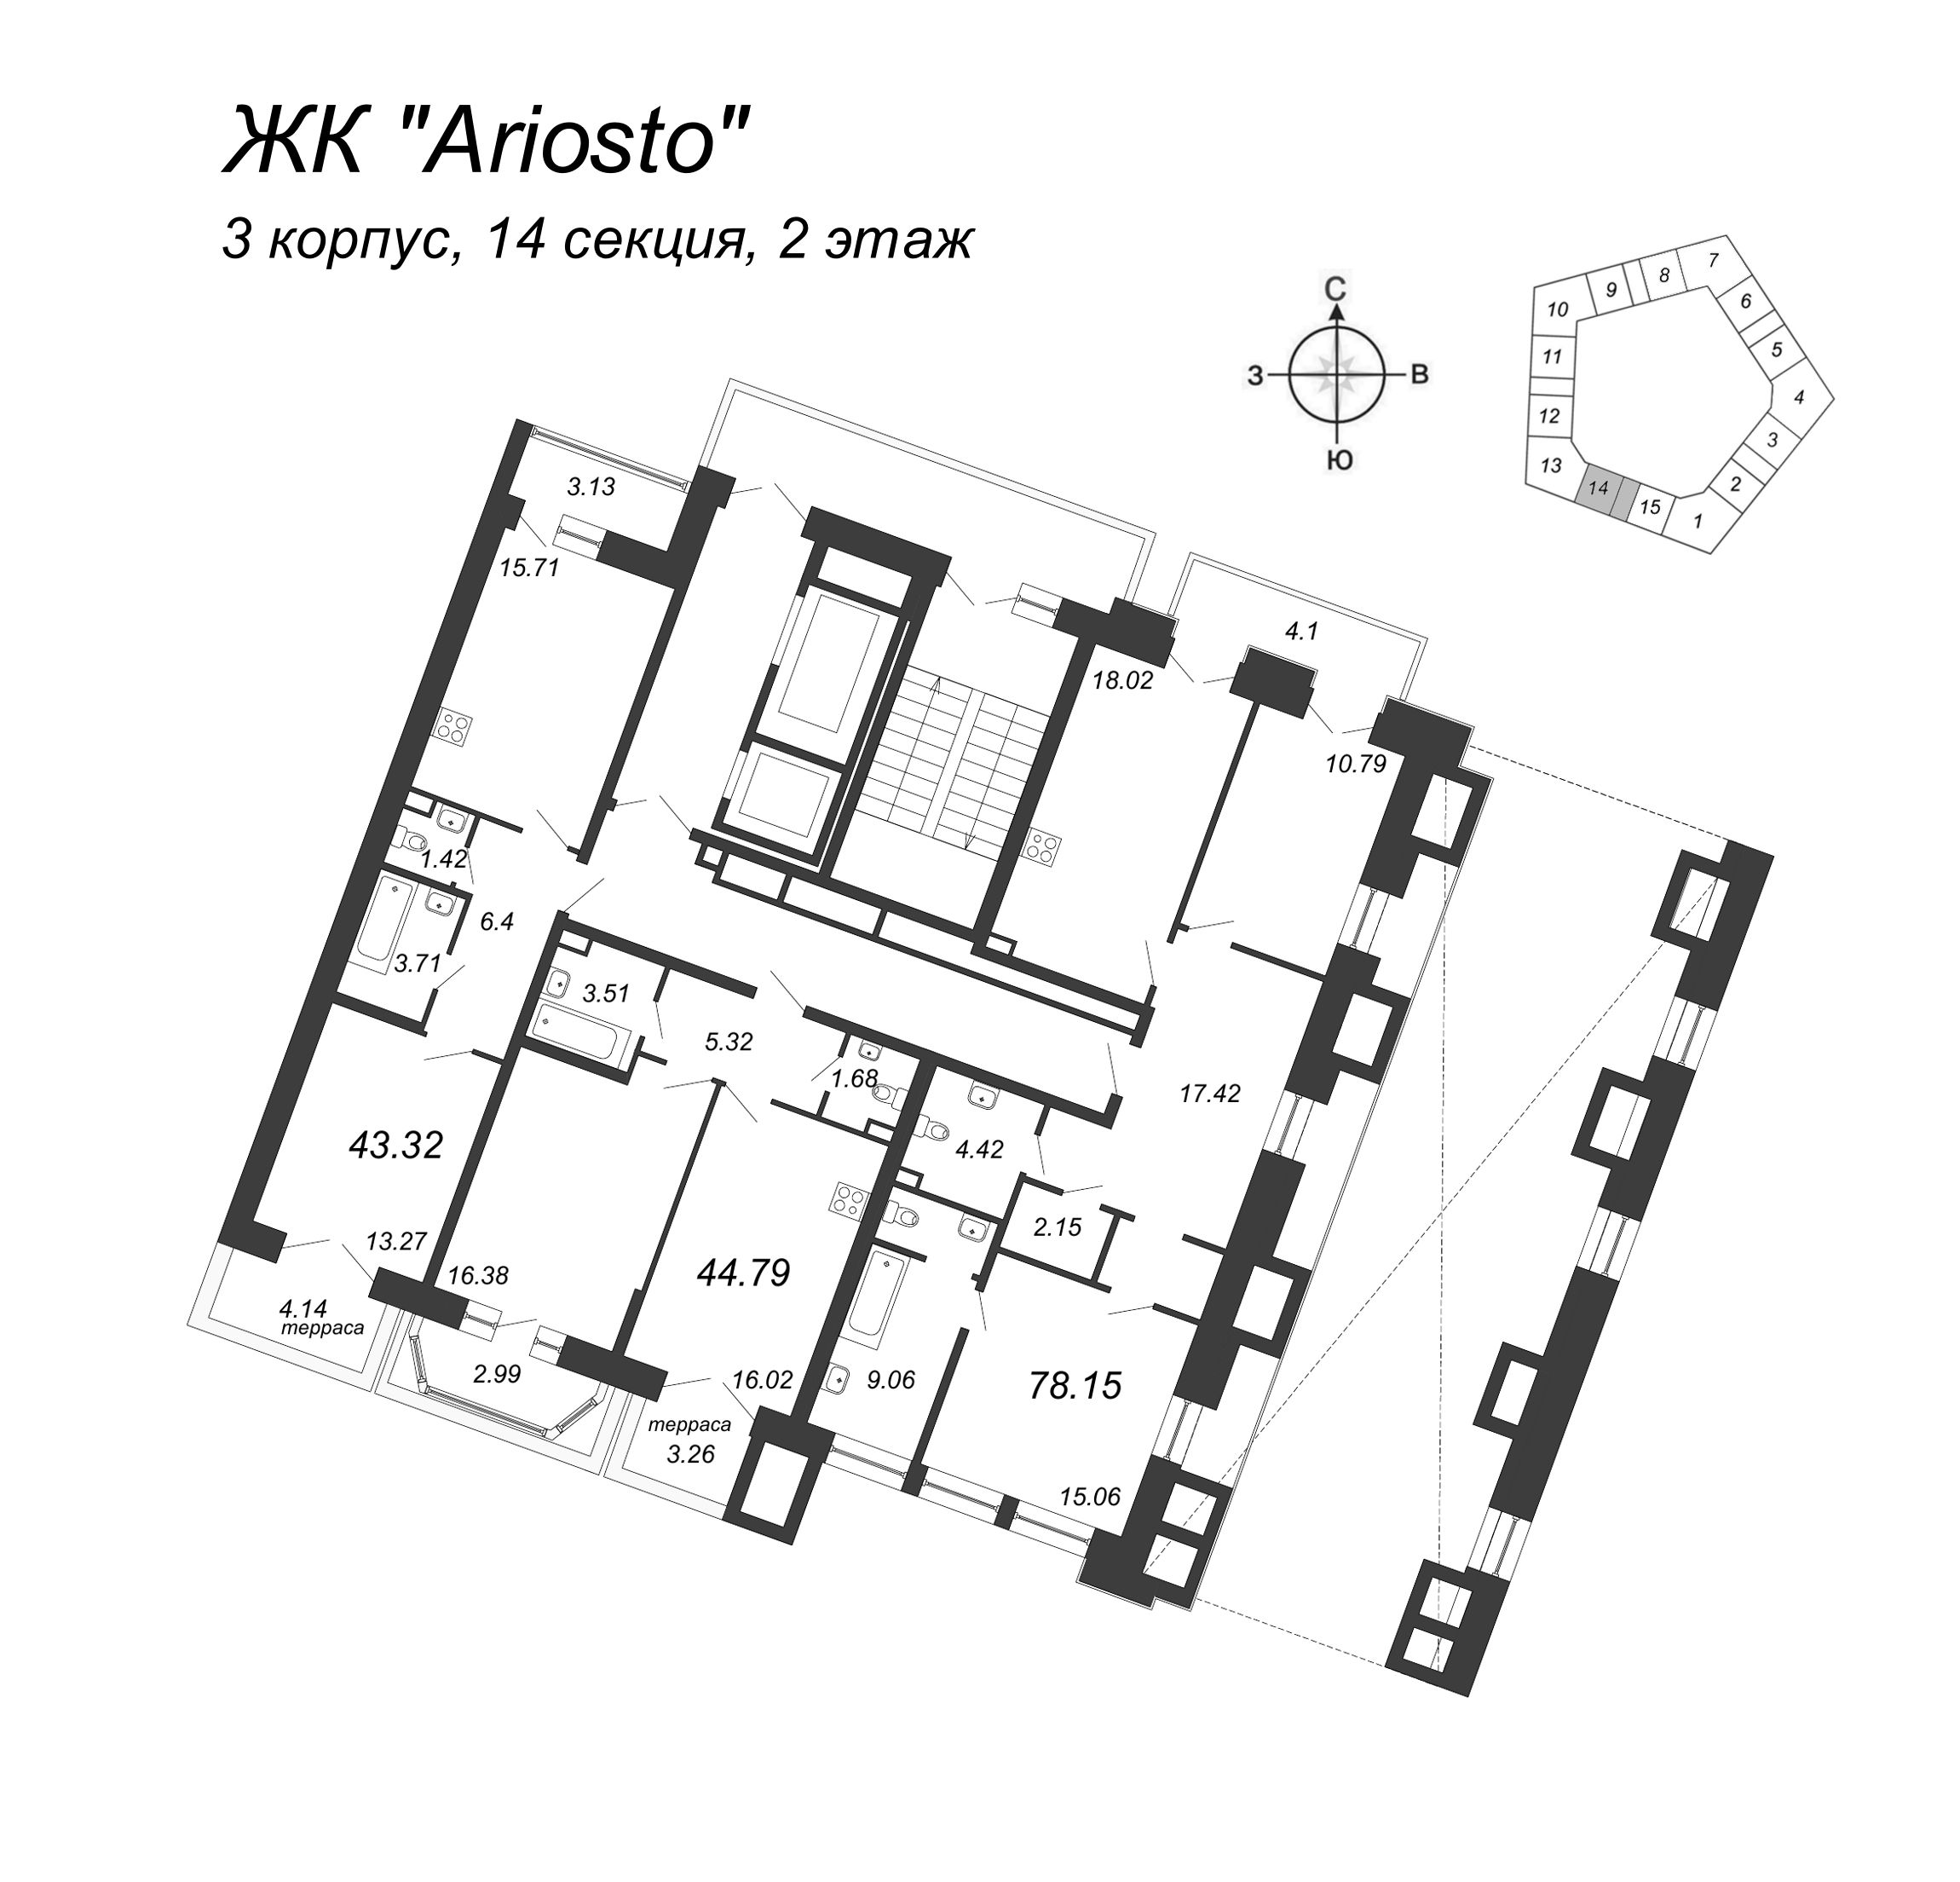 3-комнатная (Евро) квартира, 78.15 м² в ЖК "Ariosto" - планировка этажа